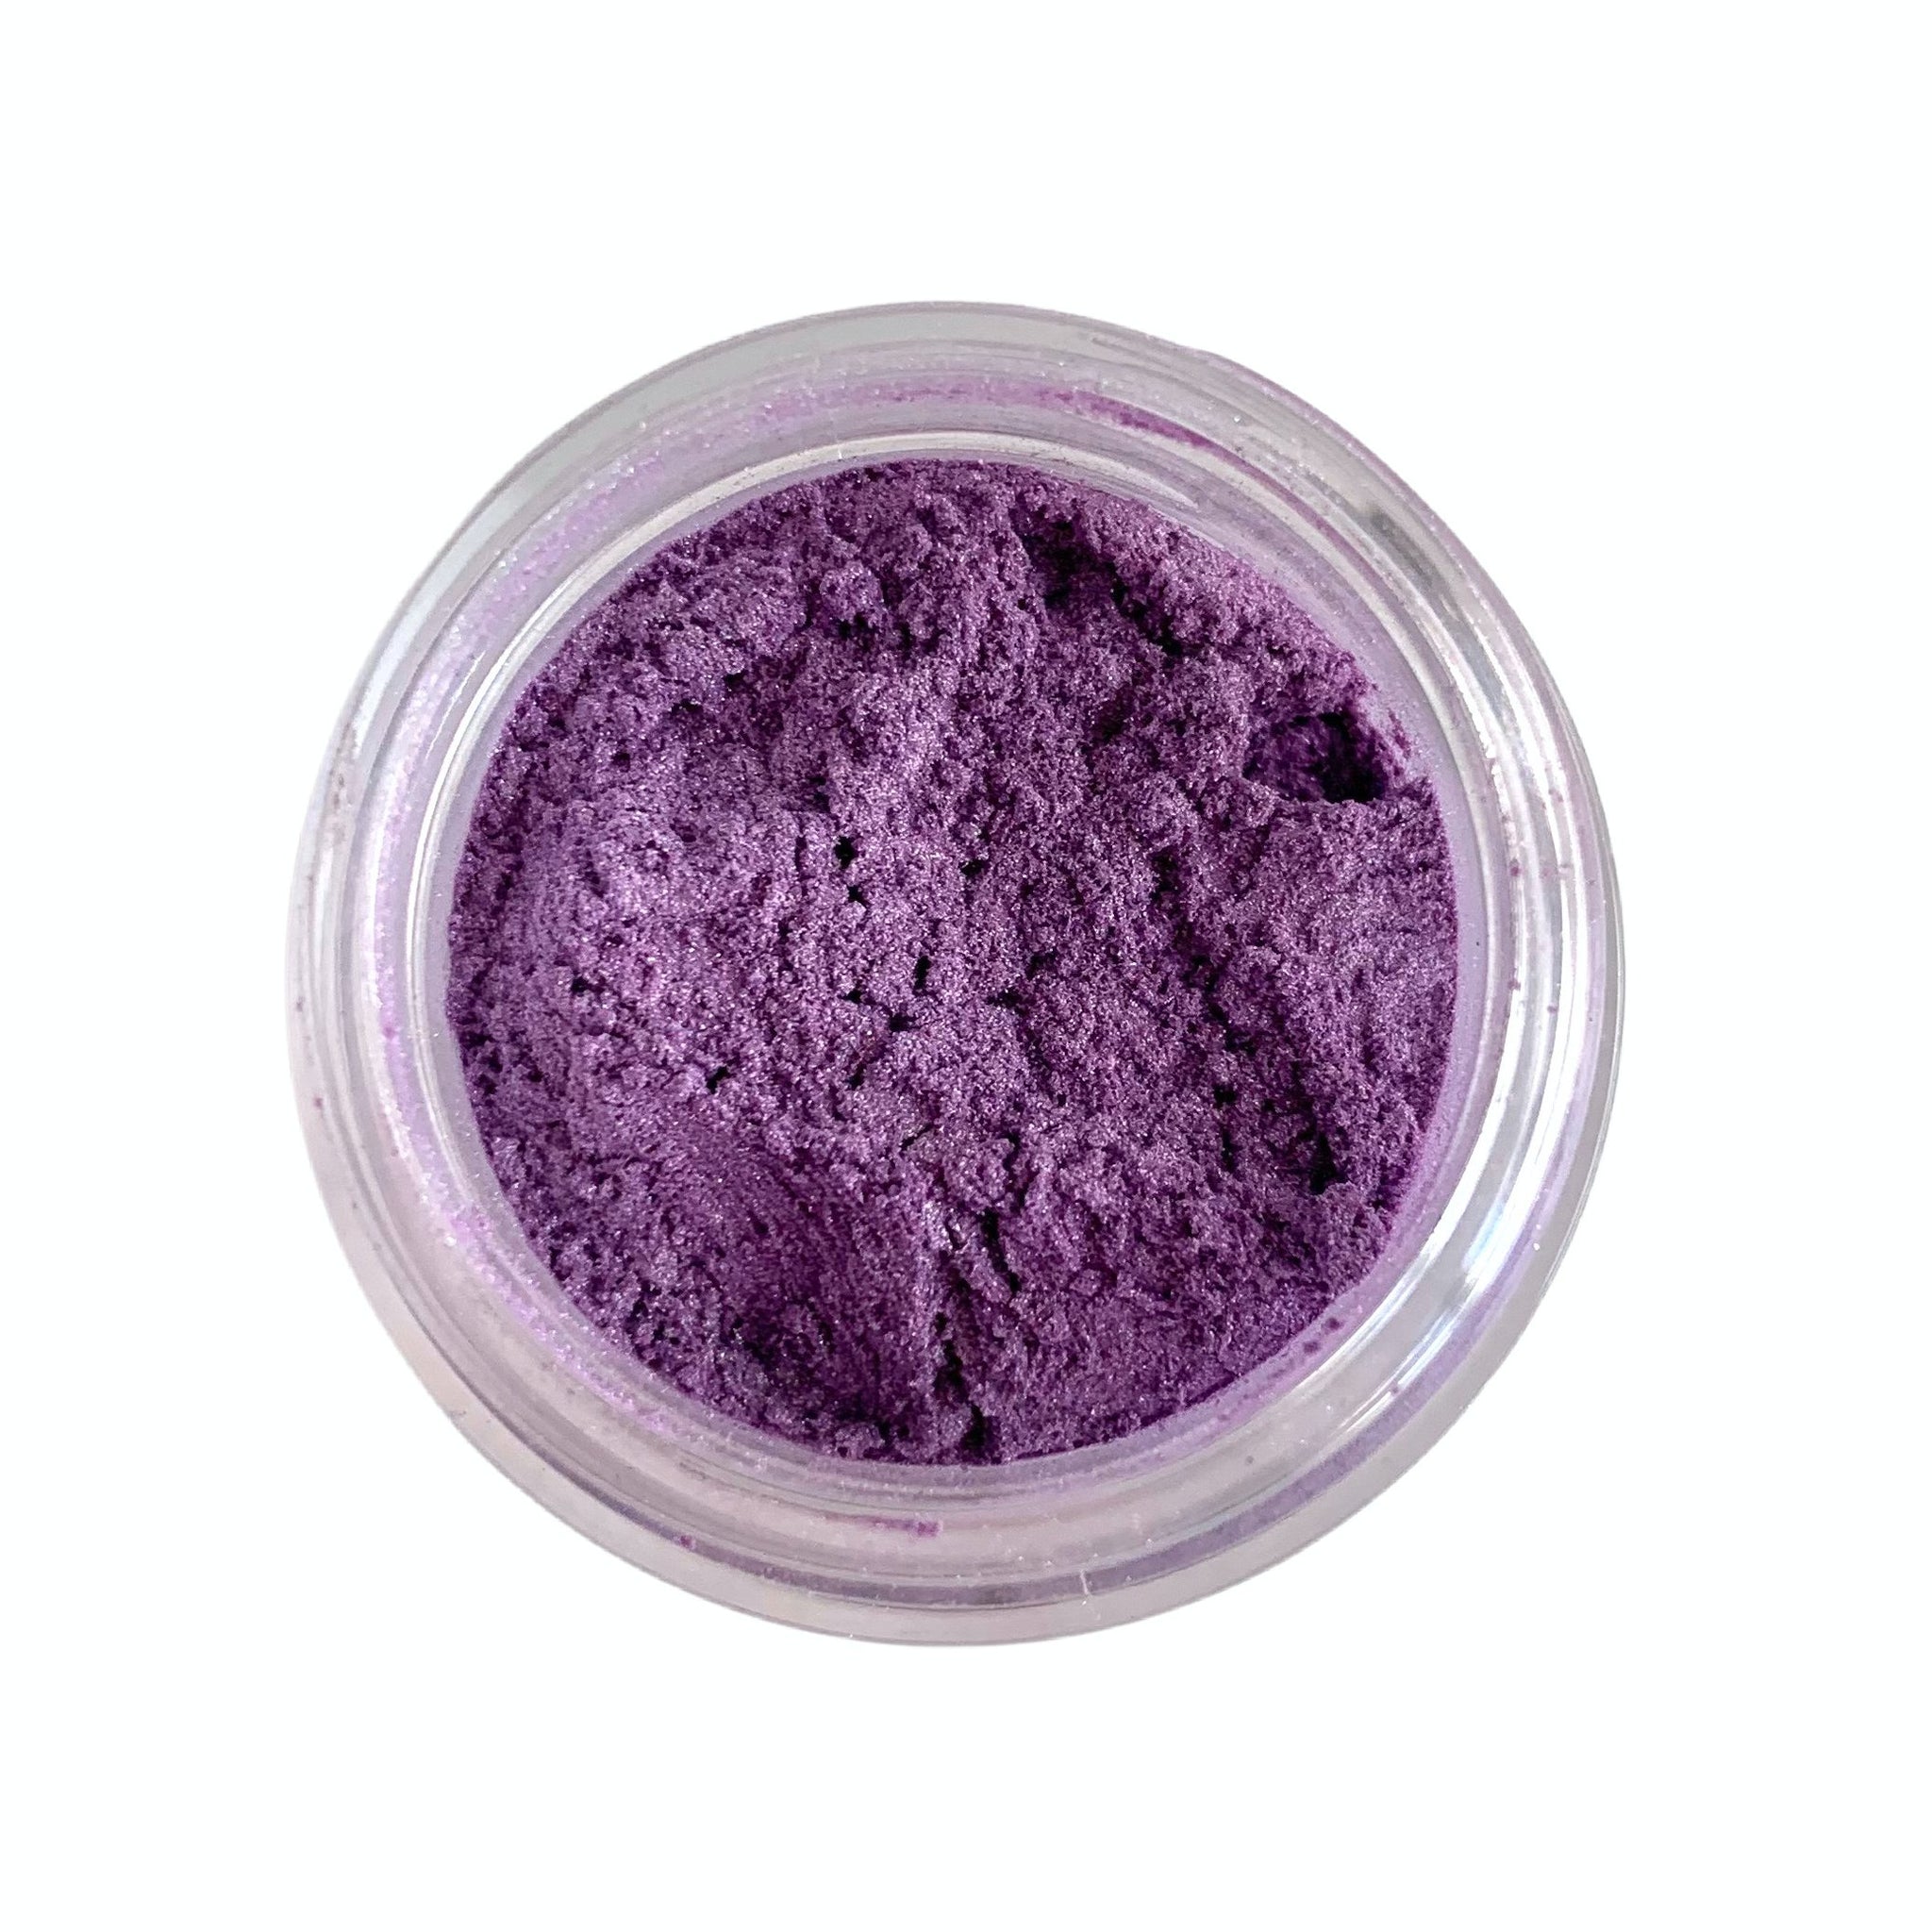 Lavender Vegan Mineral Eyeshadow